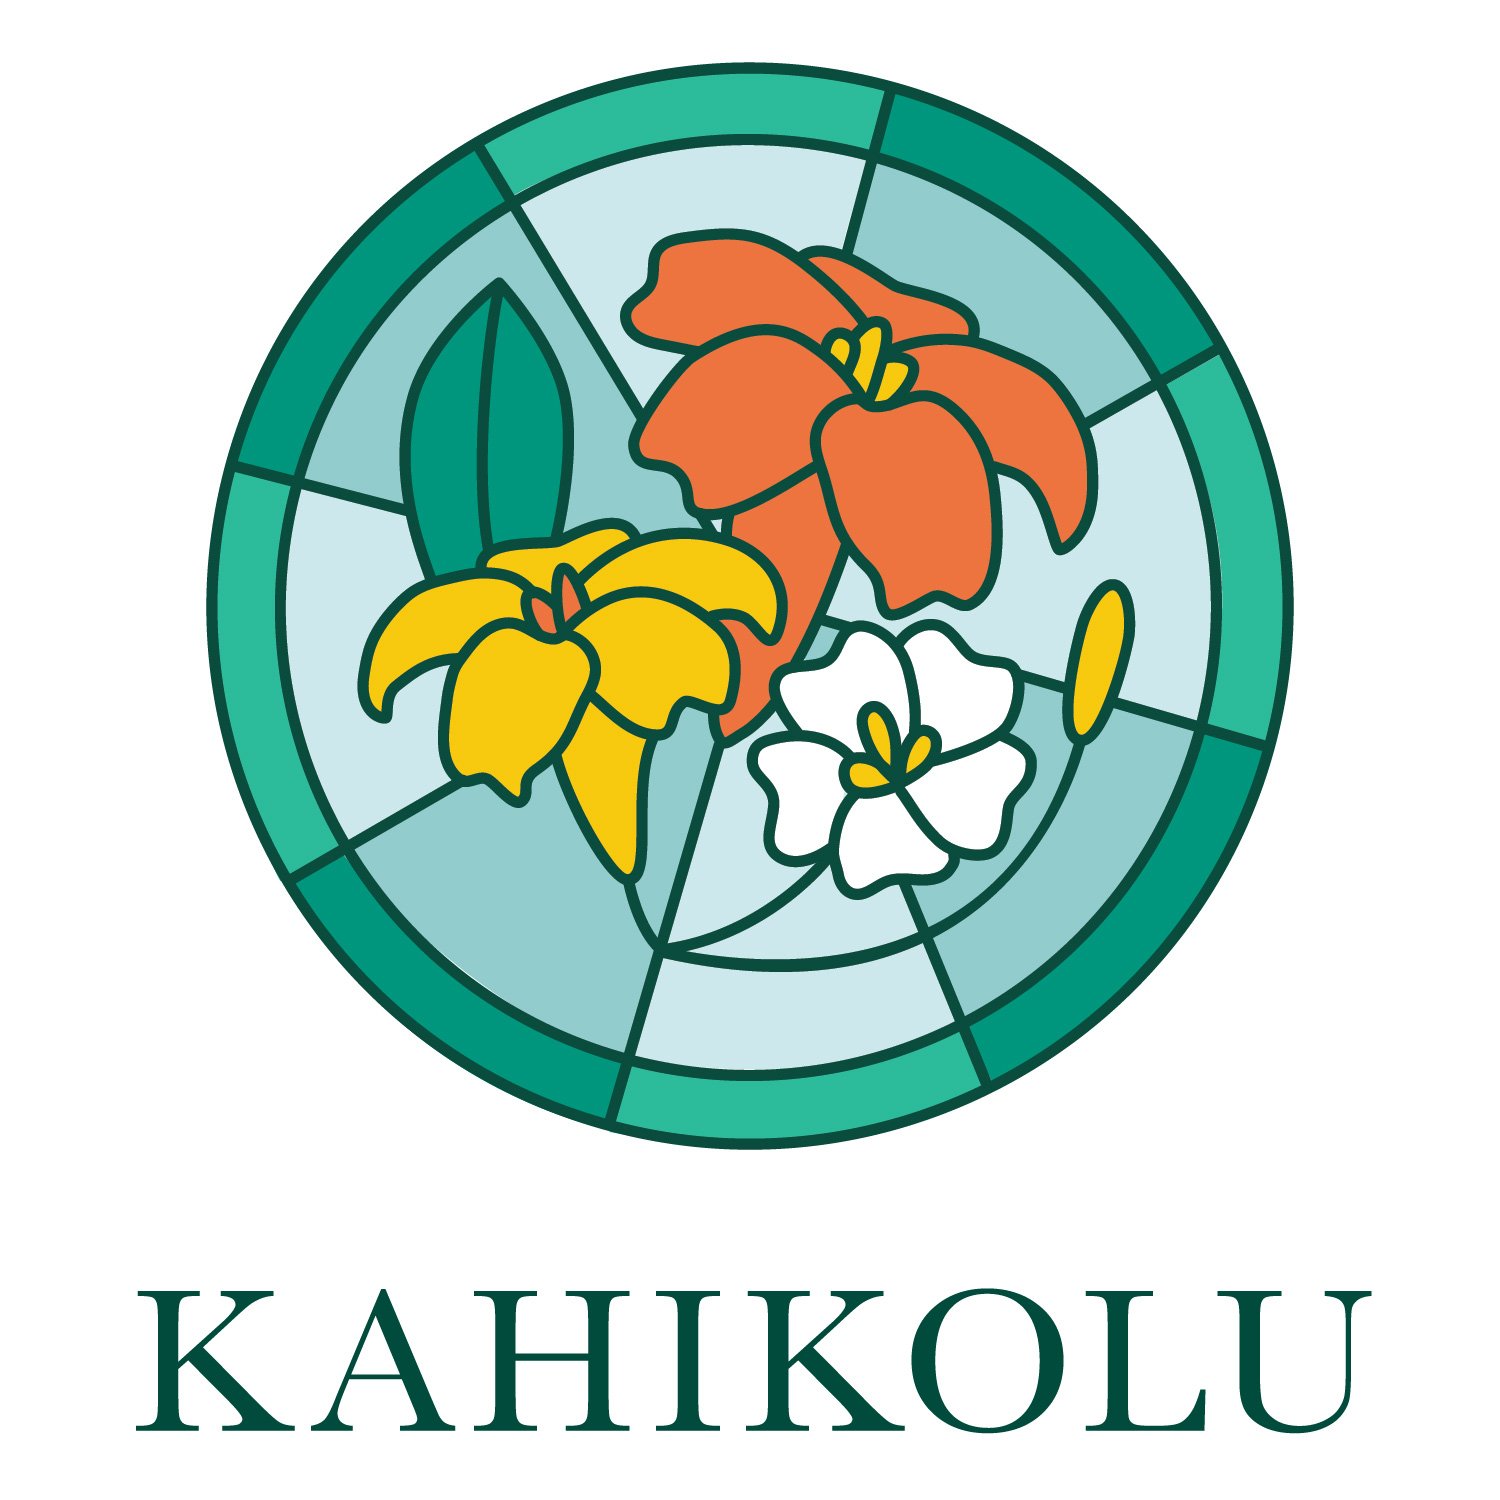 Kahikolu Church Kauai